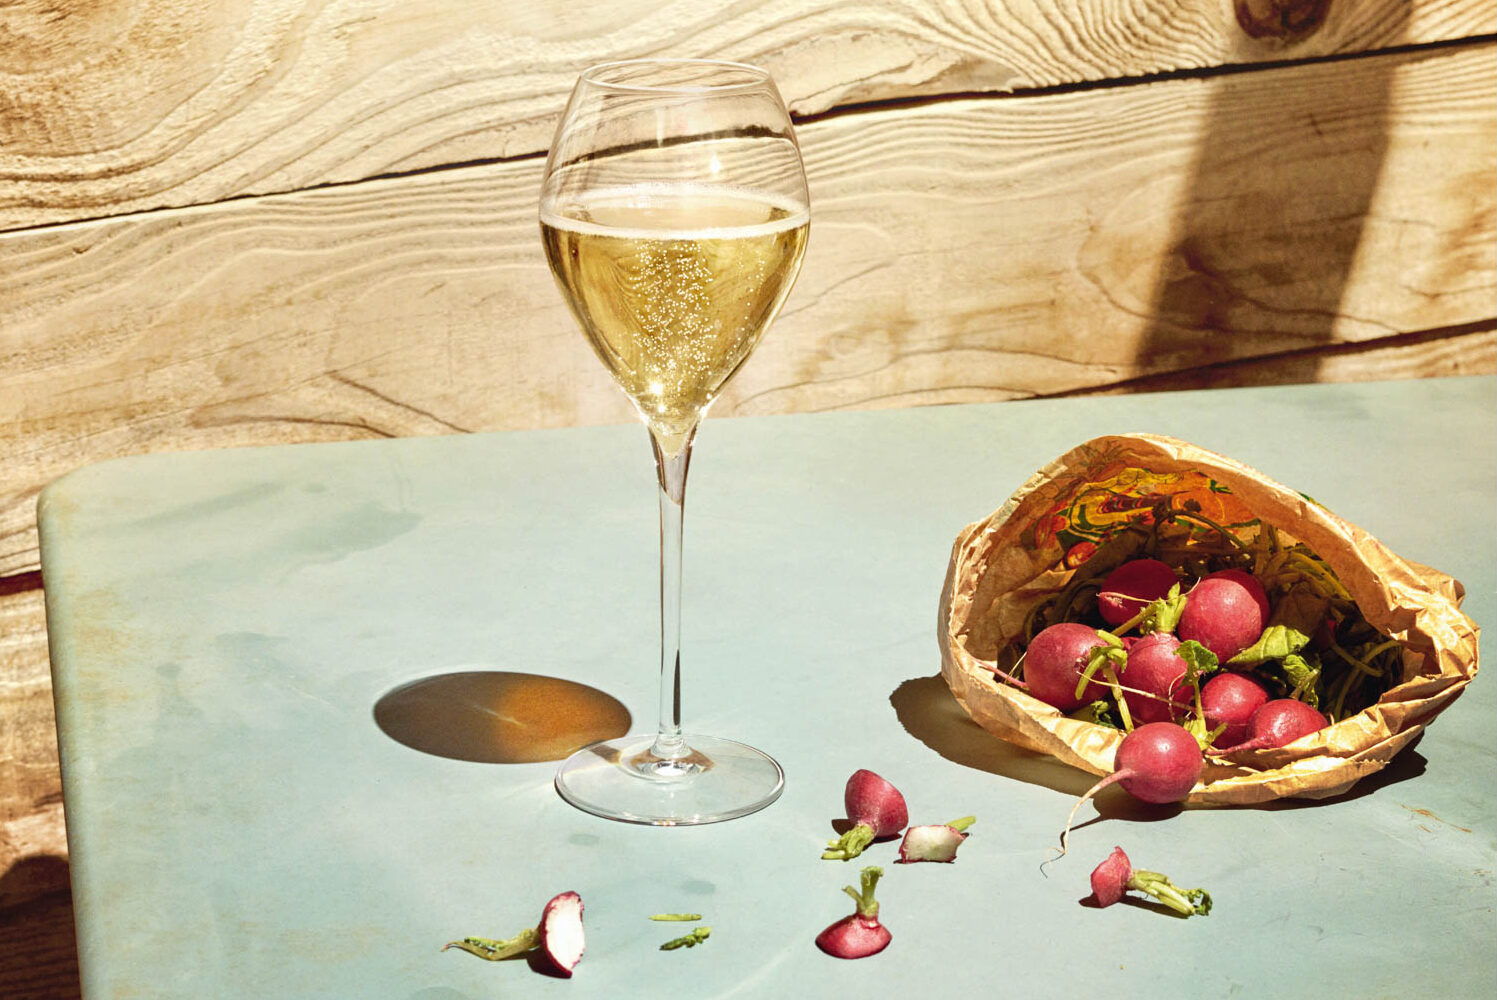 Delphin Cornaille et le champagne : « À nous de valoriser le travail du vigneron »